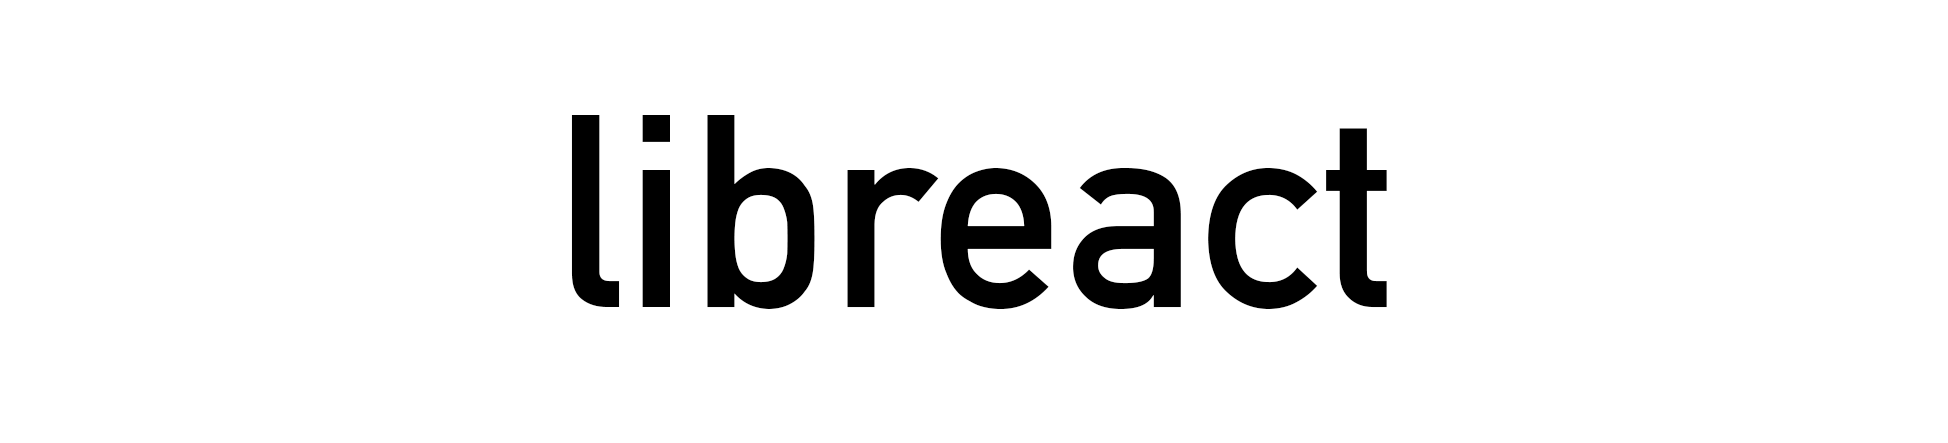 libreact logo